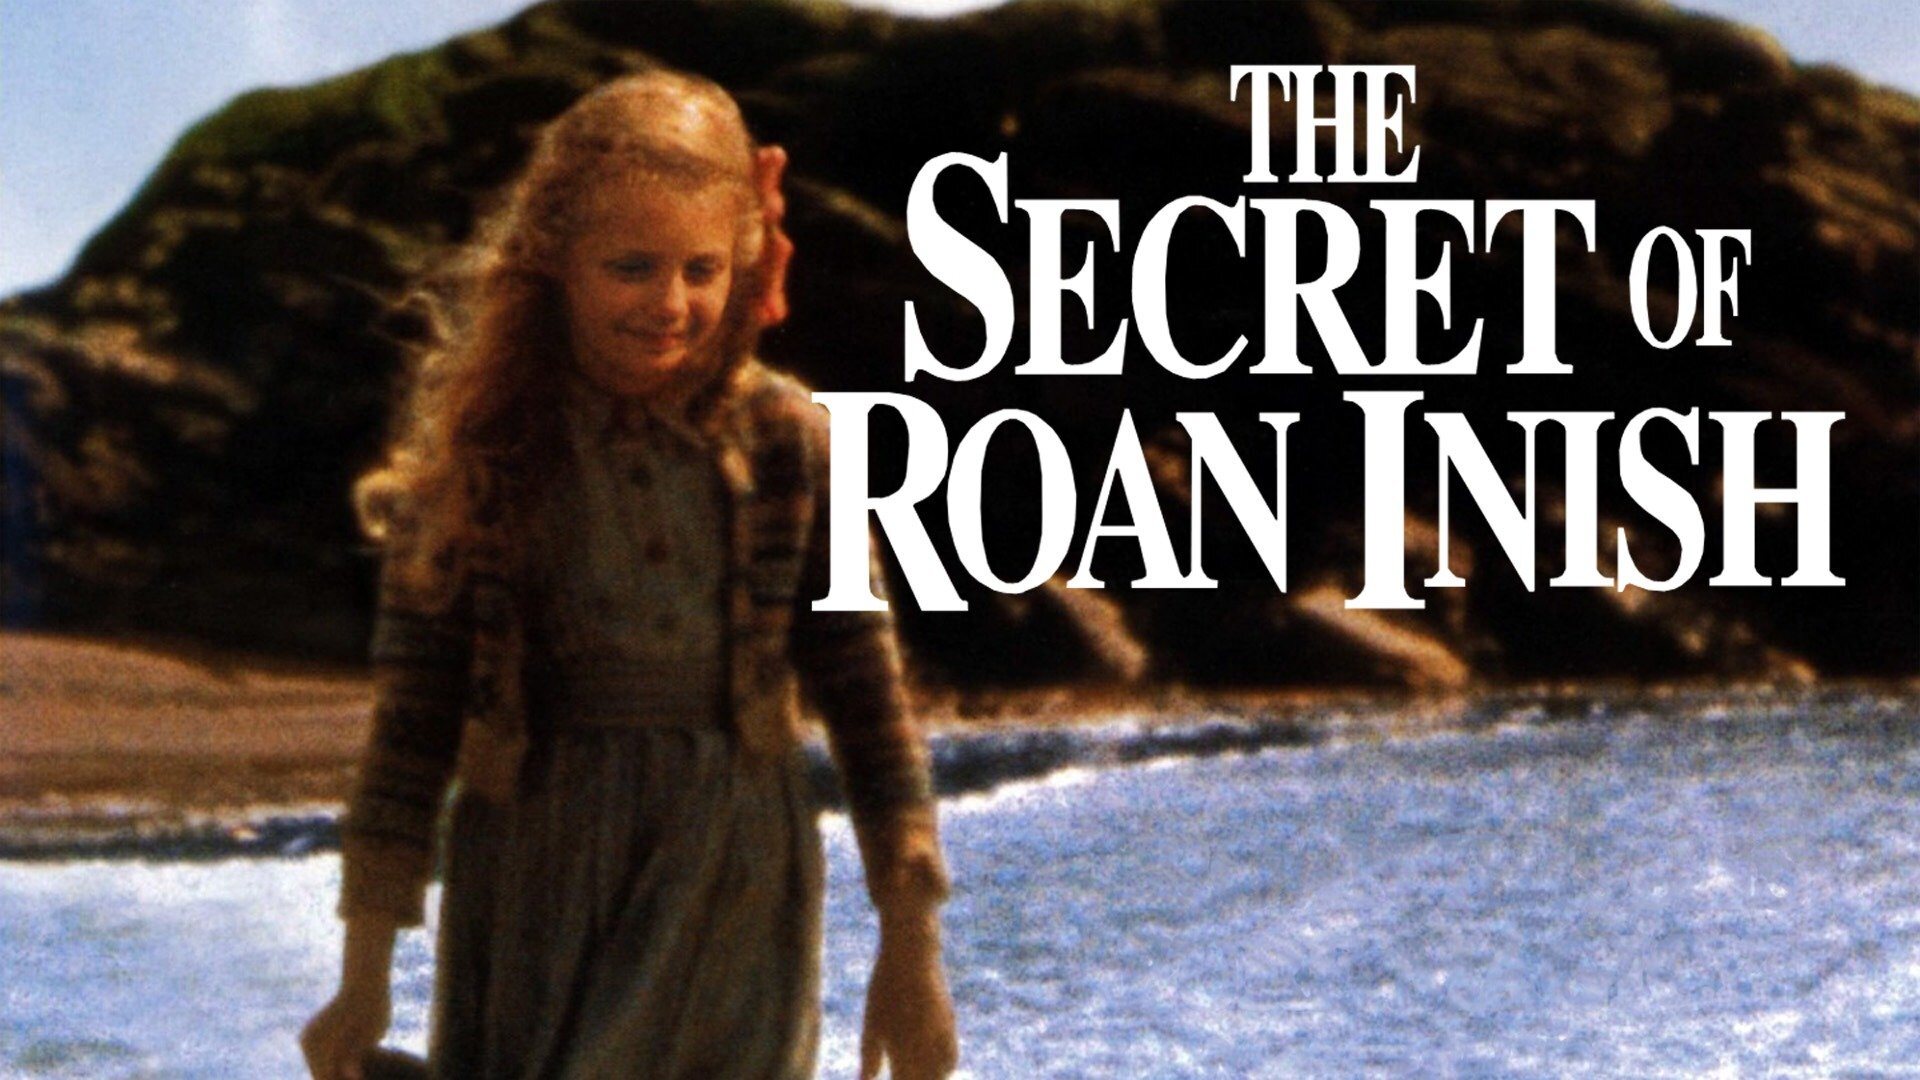 Тайна острова роан иниш. "Тайна острова Роан-Иниш" / "the Secret of Roan Inish", 1994. Селки из тайна острова Роан-Иниш.